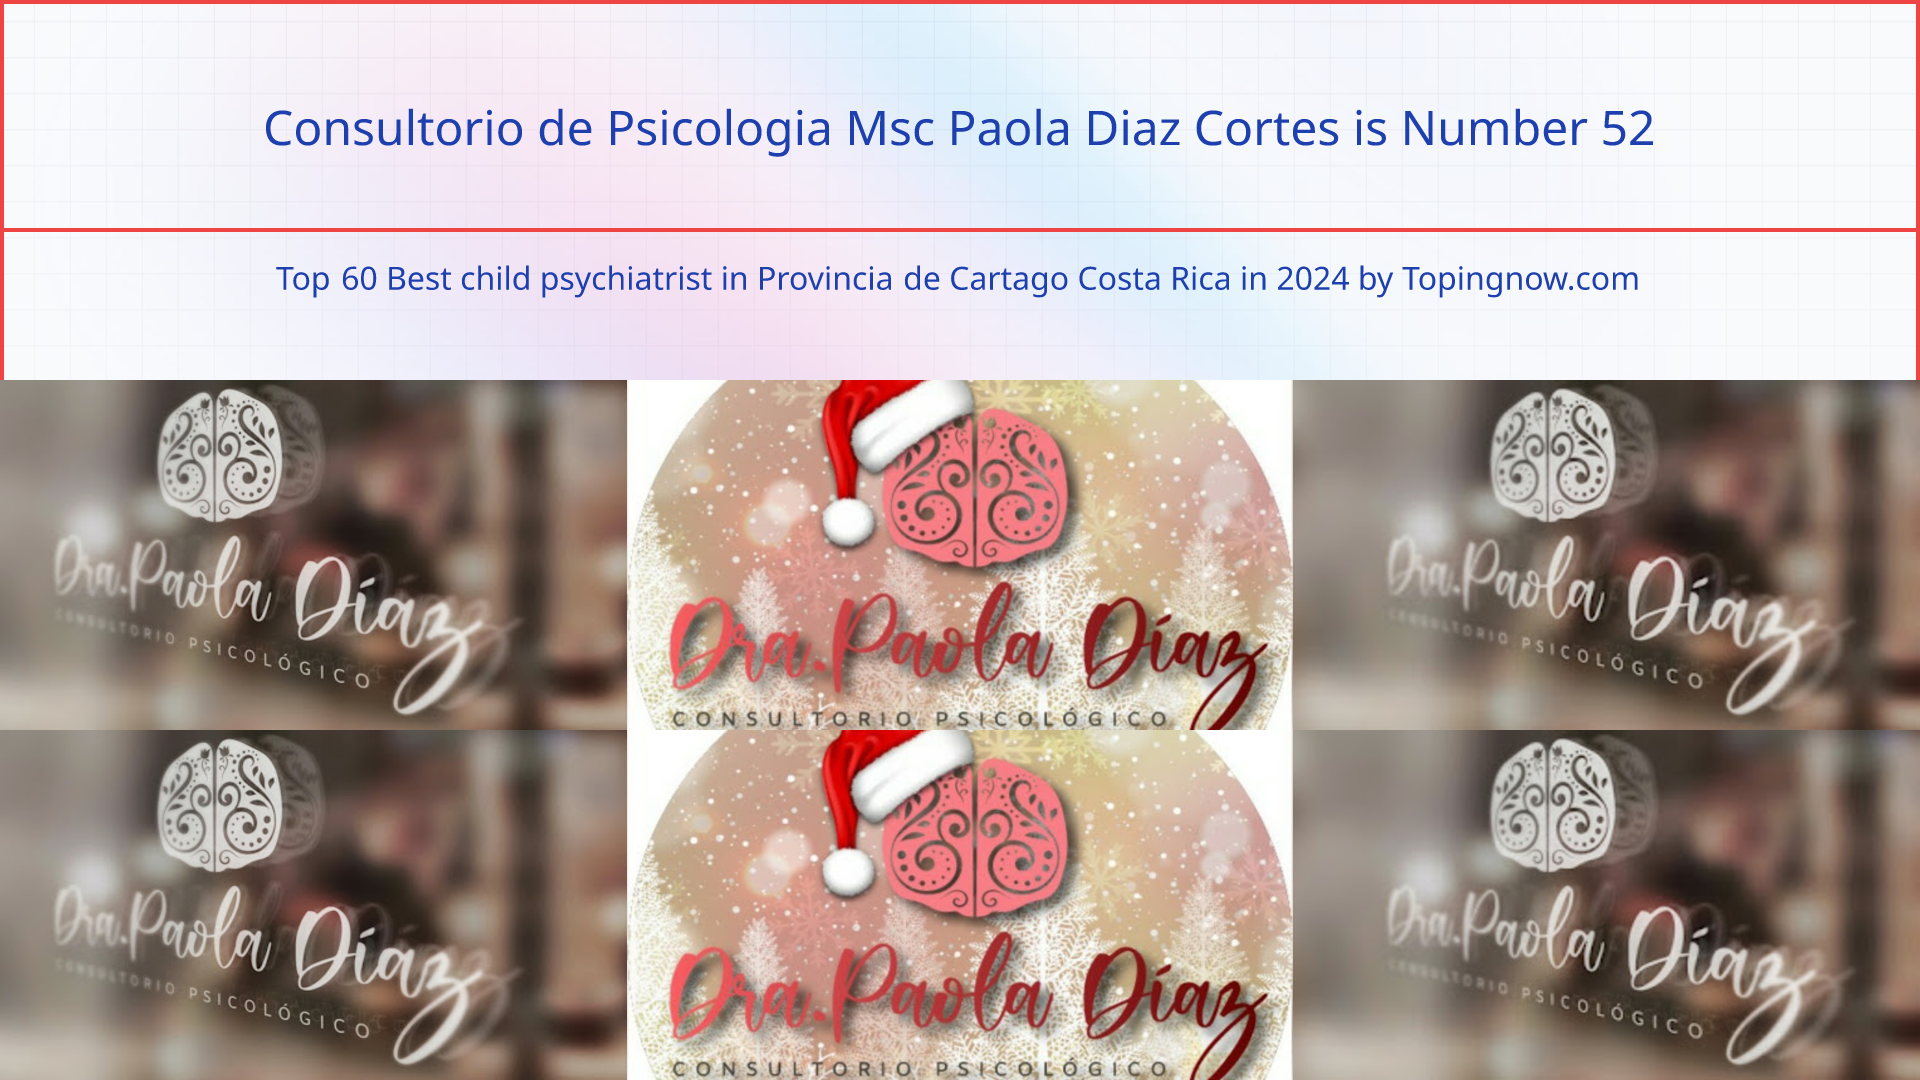 Consultorio de Psicologia Msc Paola Diaz Cortes: Top 60 Best child psychiatrist in Provincia de Cartago Costa Rica in 2024